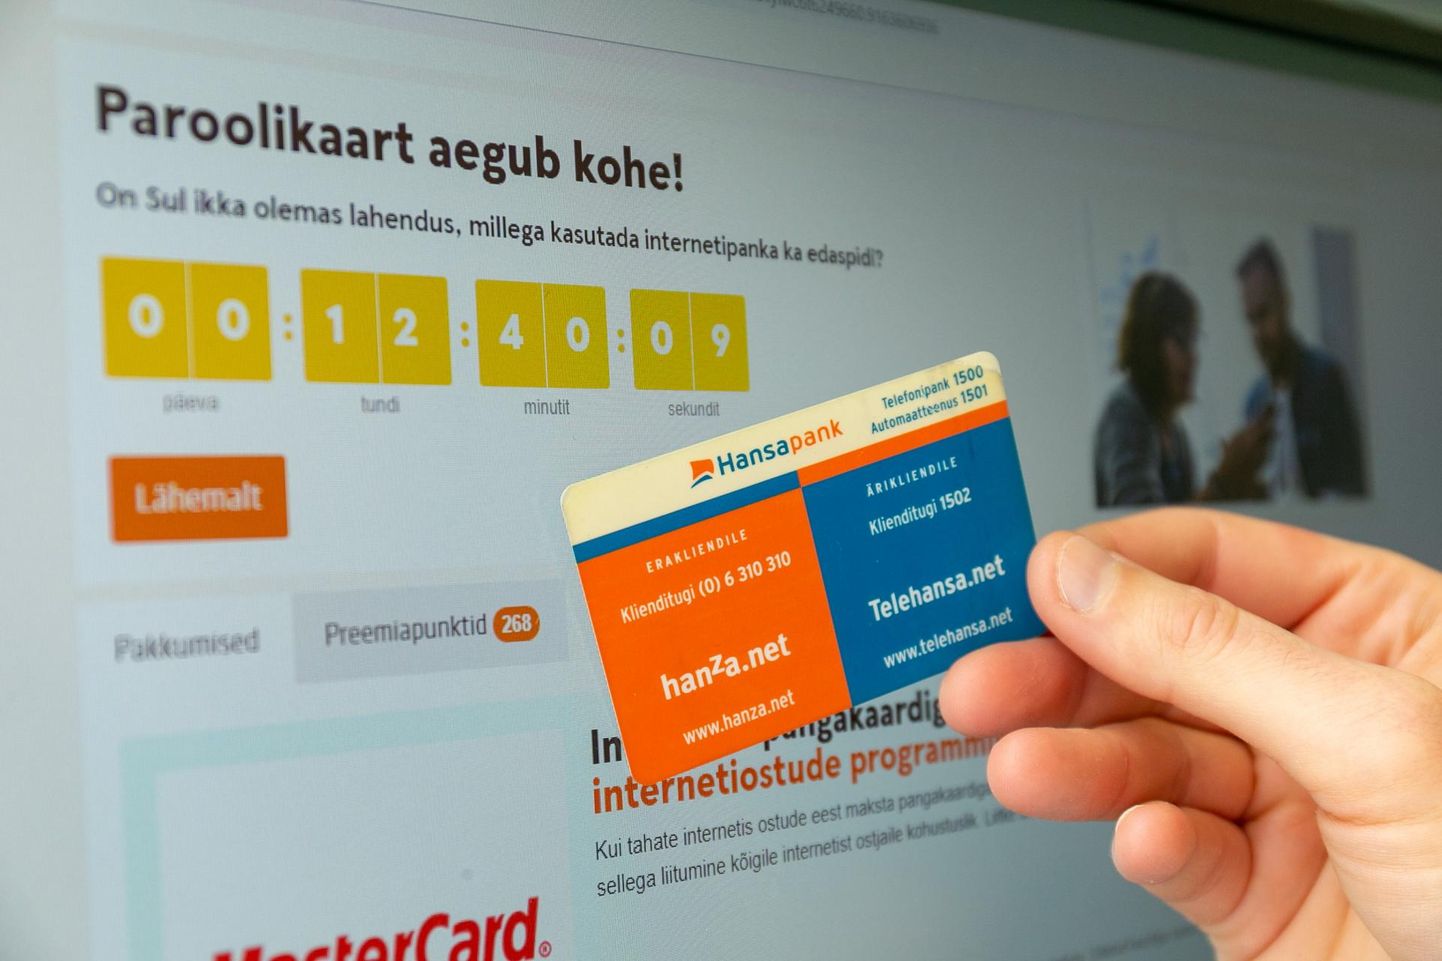 Paroolikaardiga Swedbanki internetipanka täna enam ei pääse.